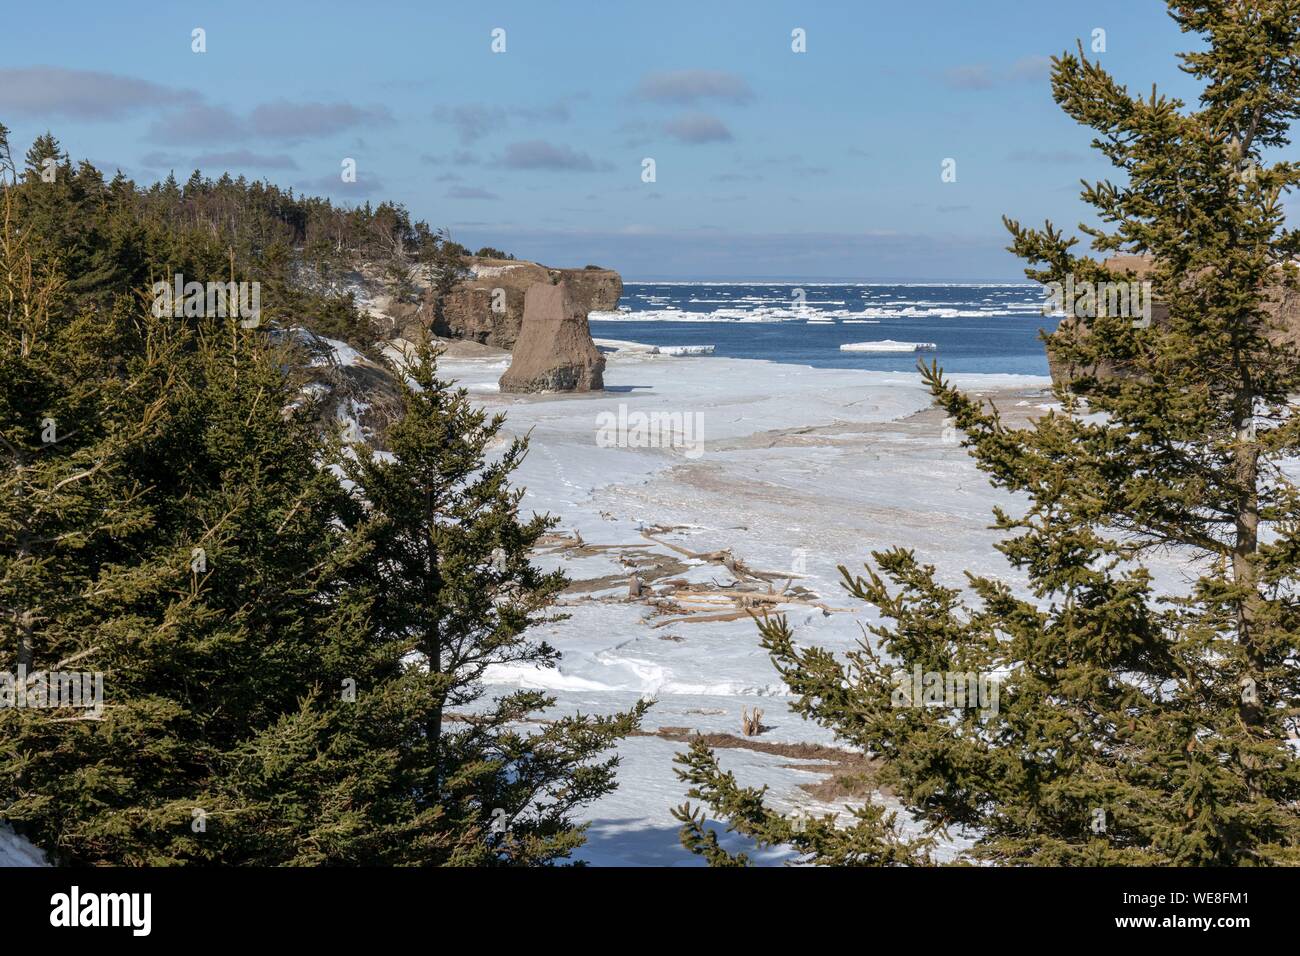 Canada, Provincia di New Brunswick, Chaleur Regione, Chaleur Bay, Grande Anse e Bathurst Costa, la spiaggia e la baia di Pokeshaw al momento della molla per lo scioglimento del ghiaccio Foto Stock